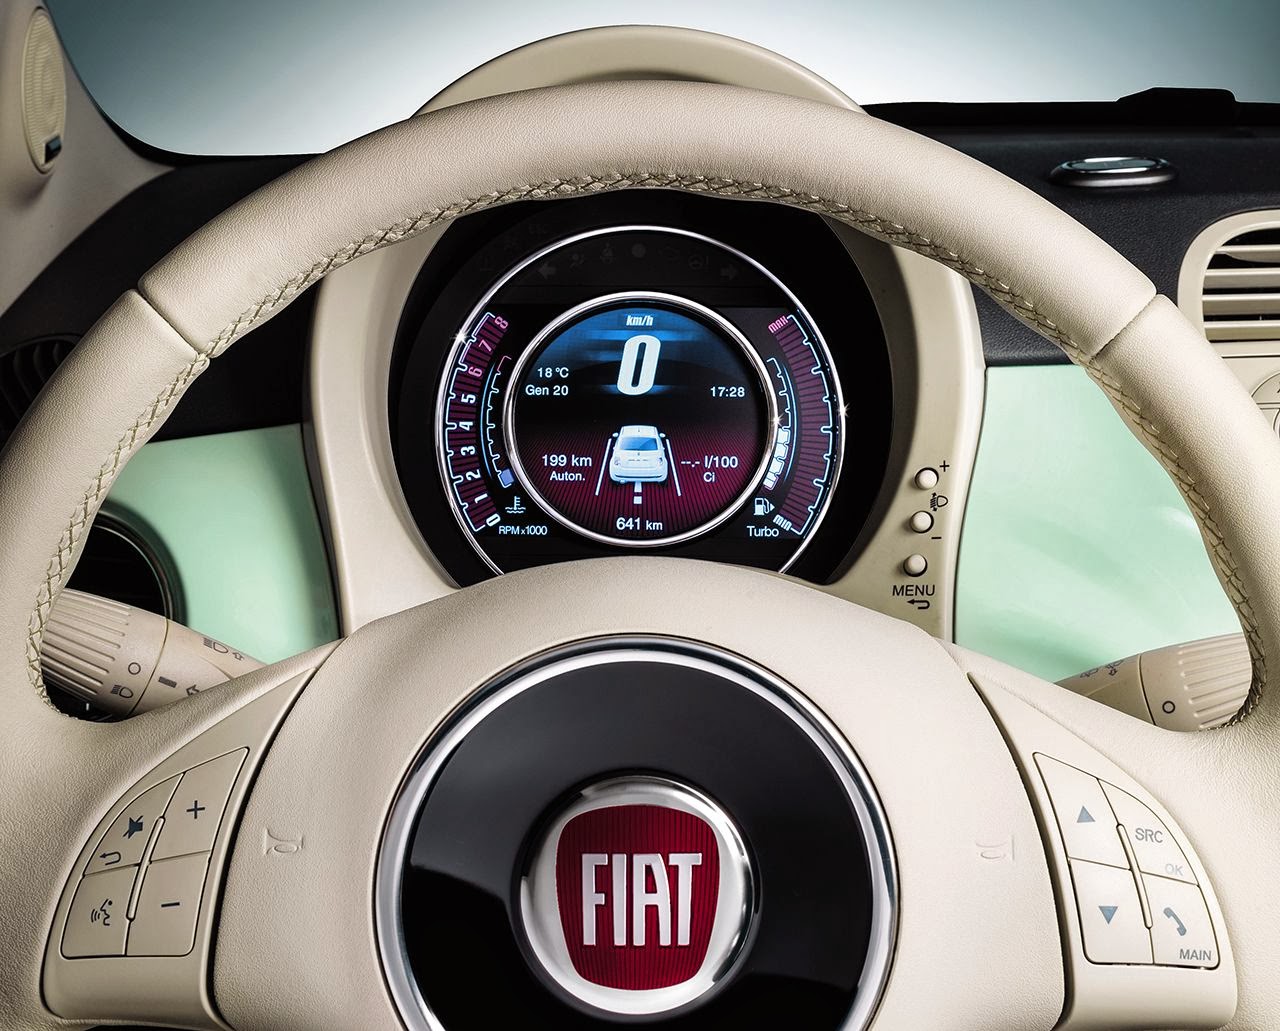 Voiture communicante: Un tableau de bord numérique pour la Fiat 500